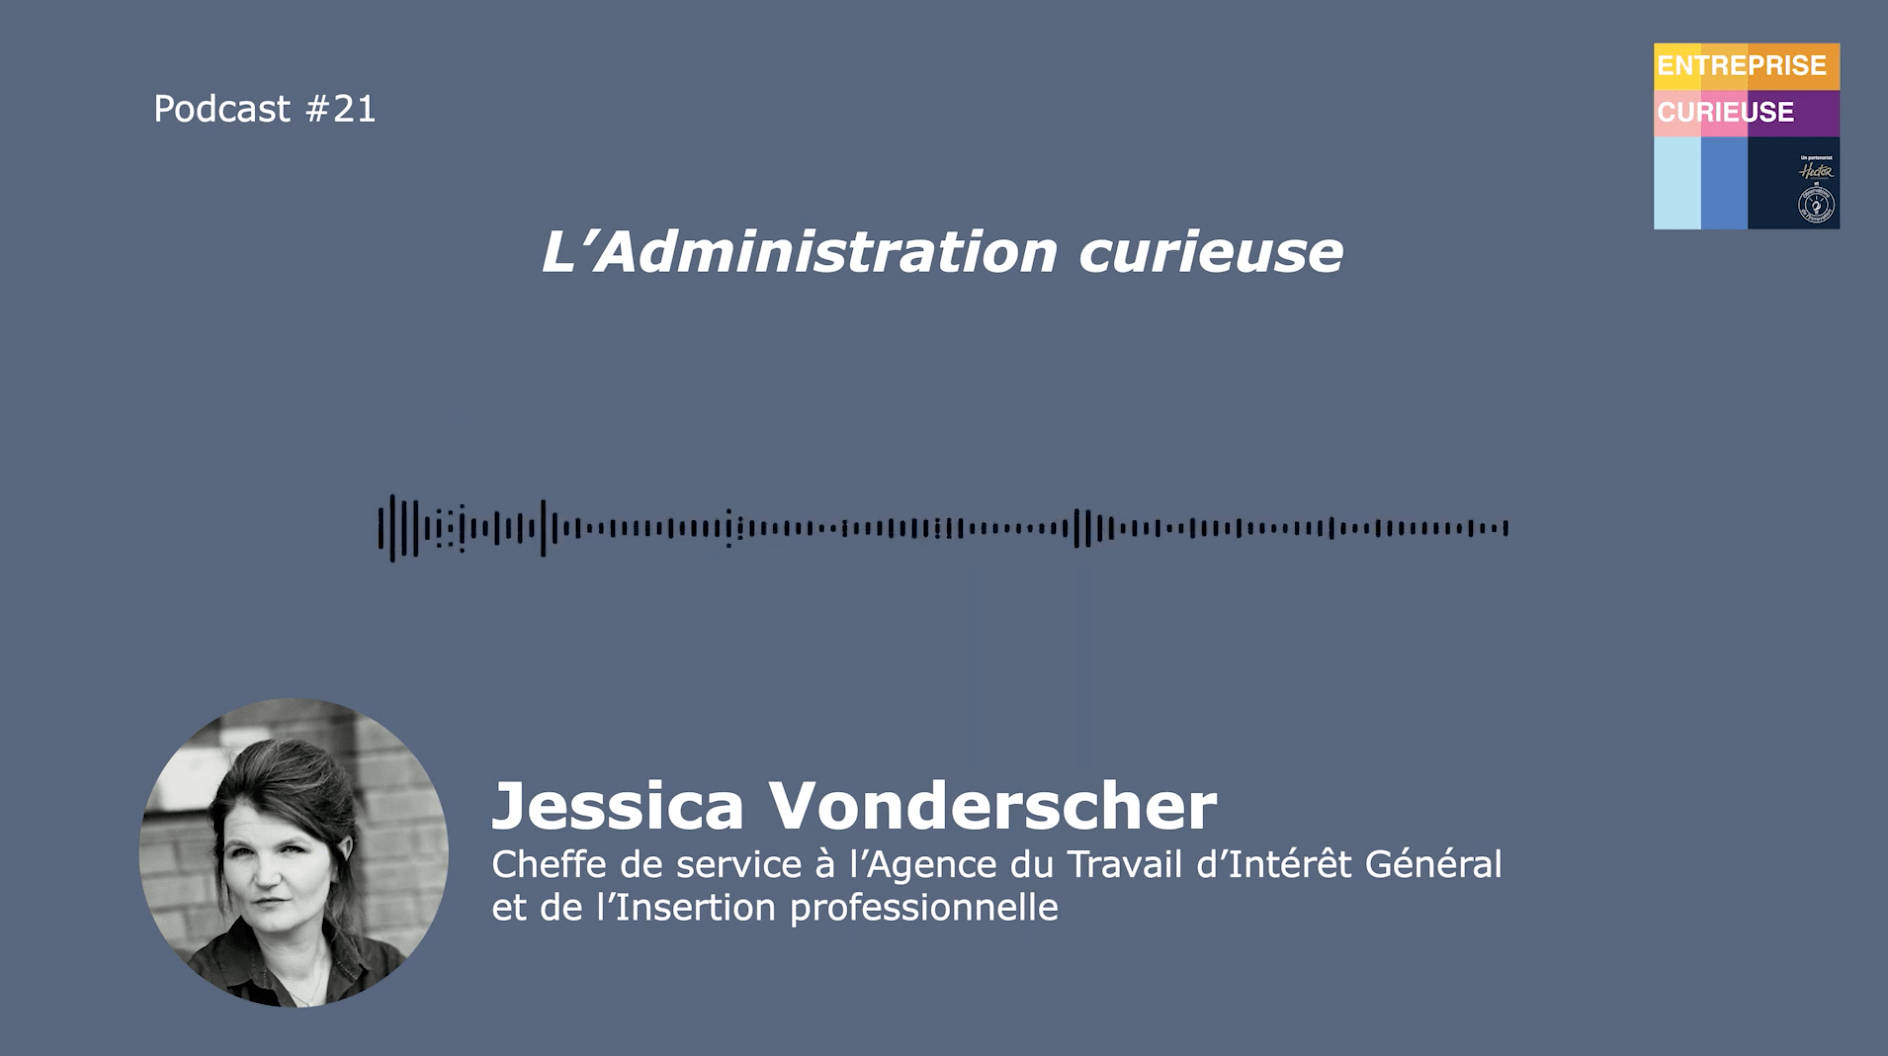 Jessica Vonderscher - Entreprise curieuse